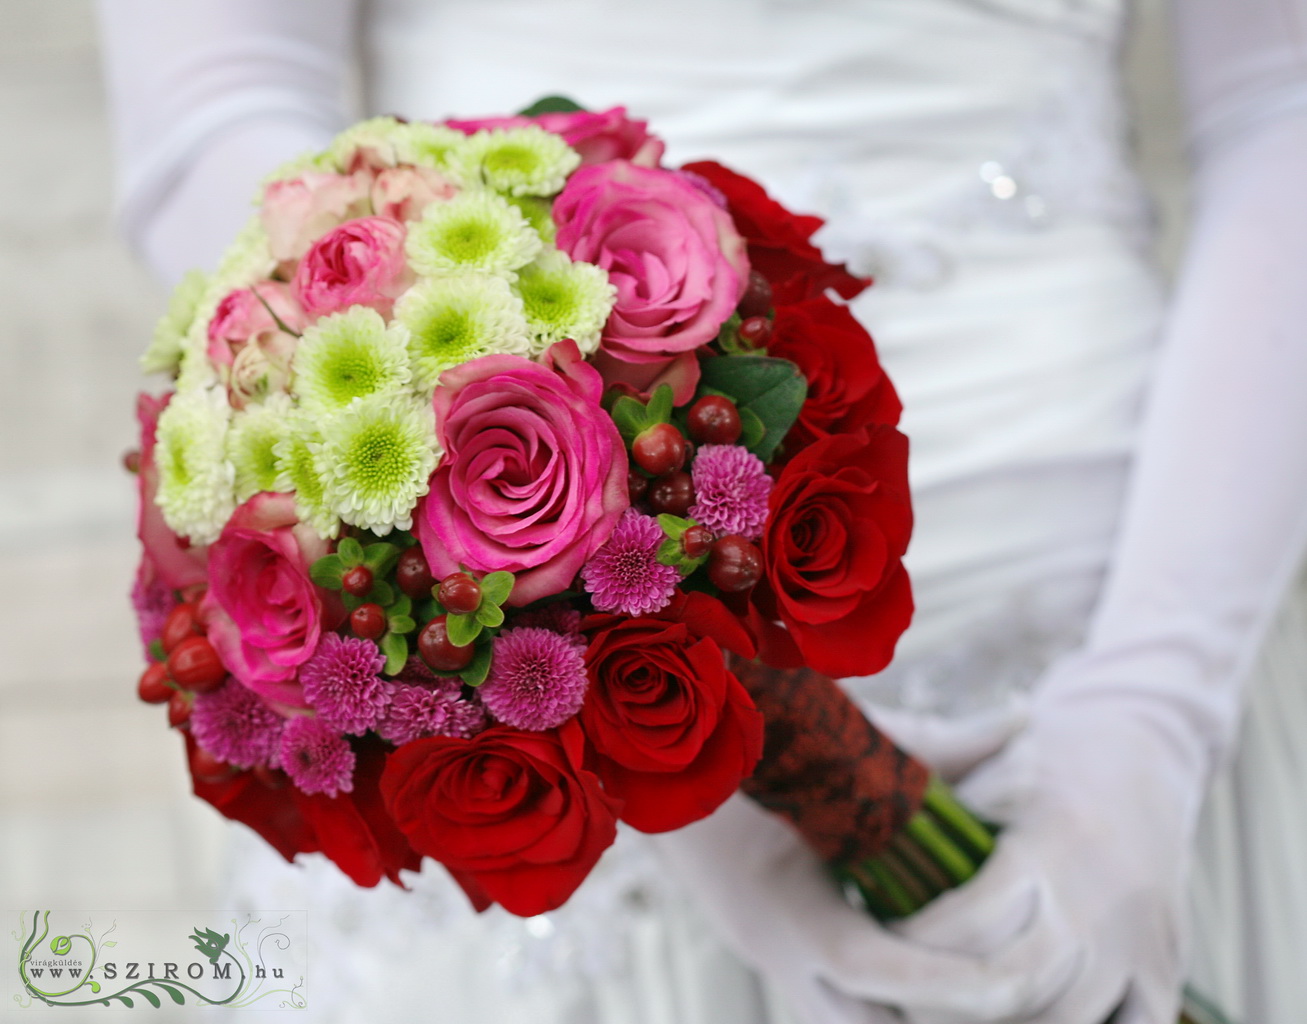 Menyasszonyi csokor bidermeier (rózsa, hypericum, angol rózsa, santini, aster, vörös, rózsaszín lila, zöld)